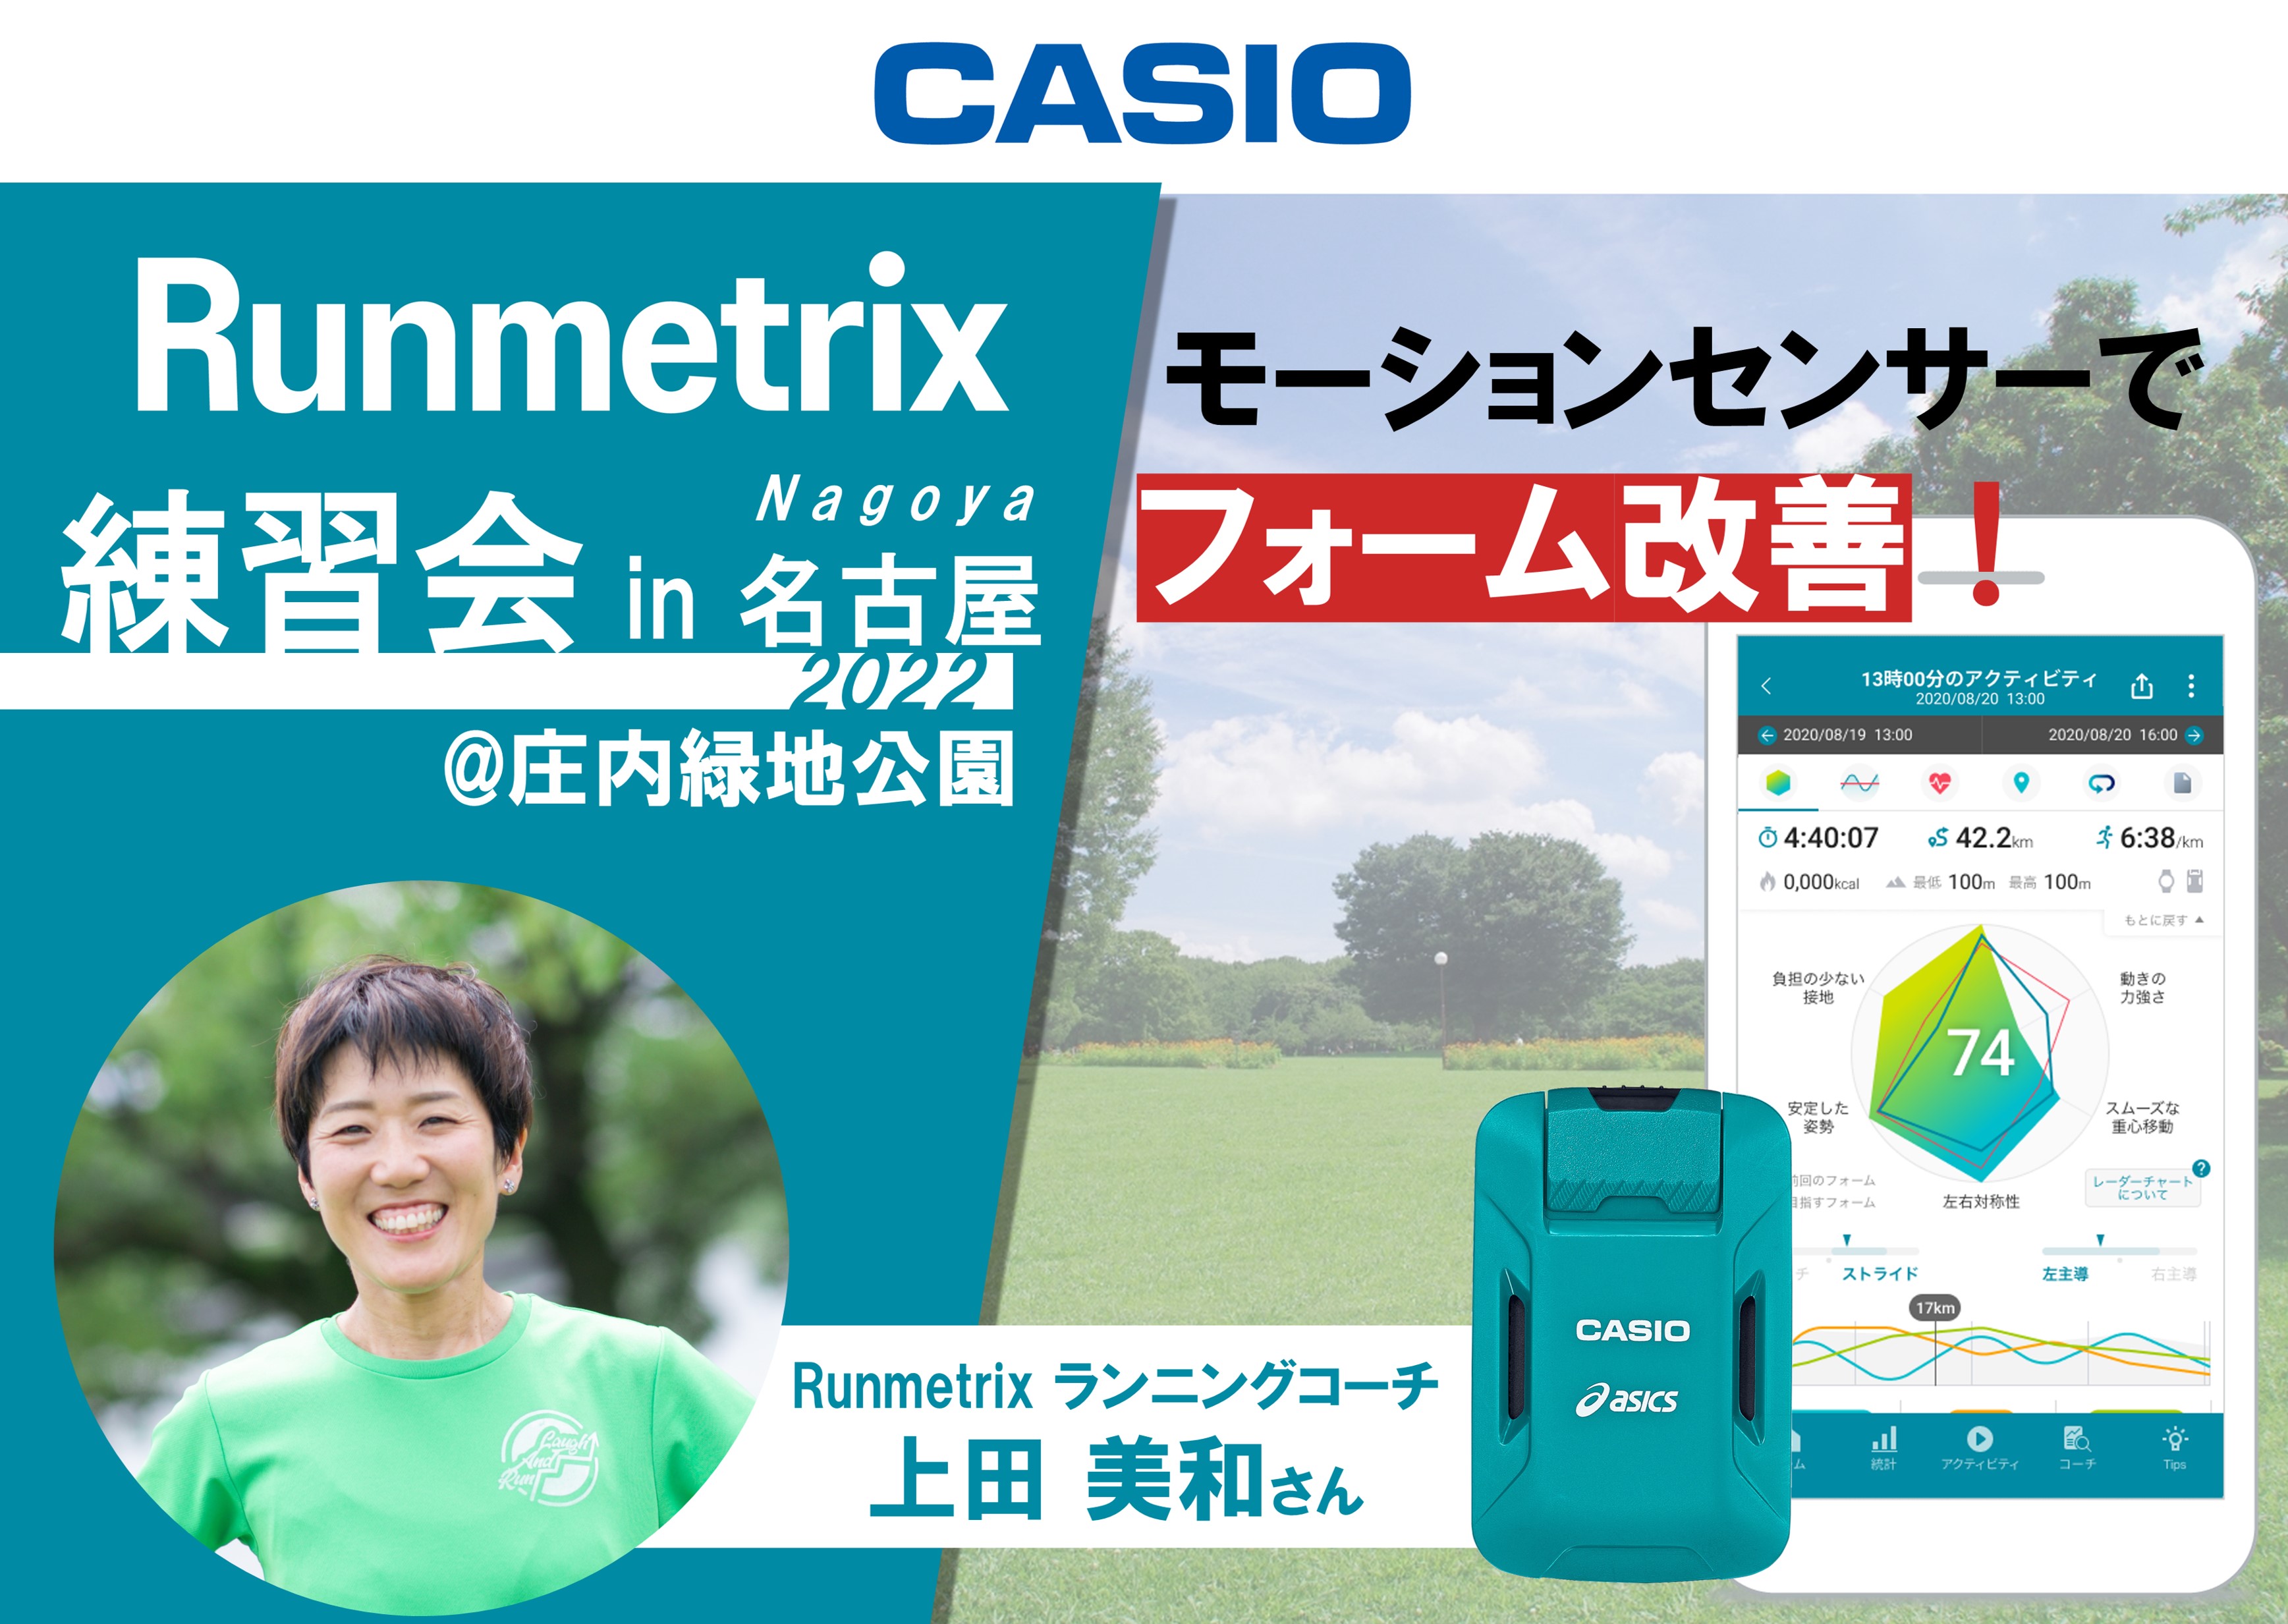 ニュース - Runmetrix - ランニングアプリ - CASIO